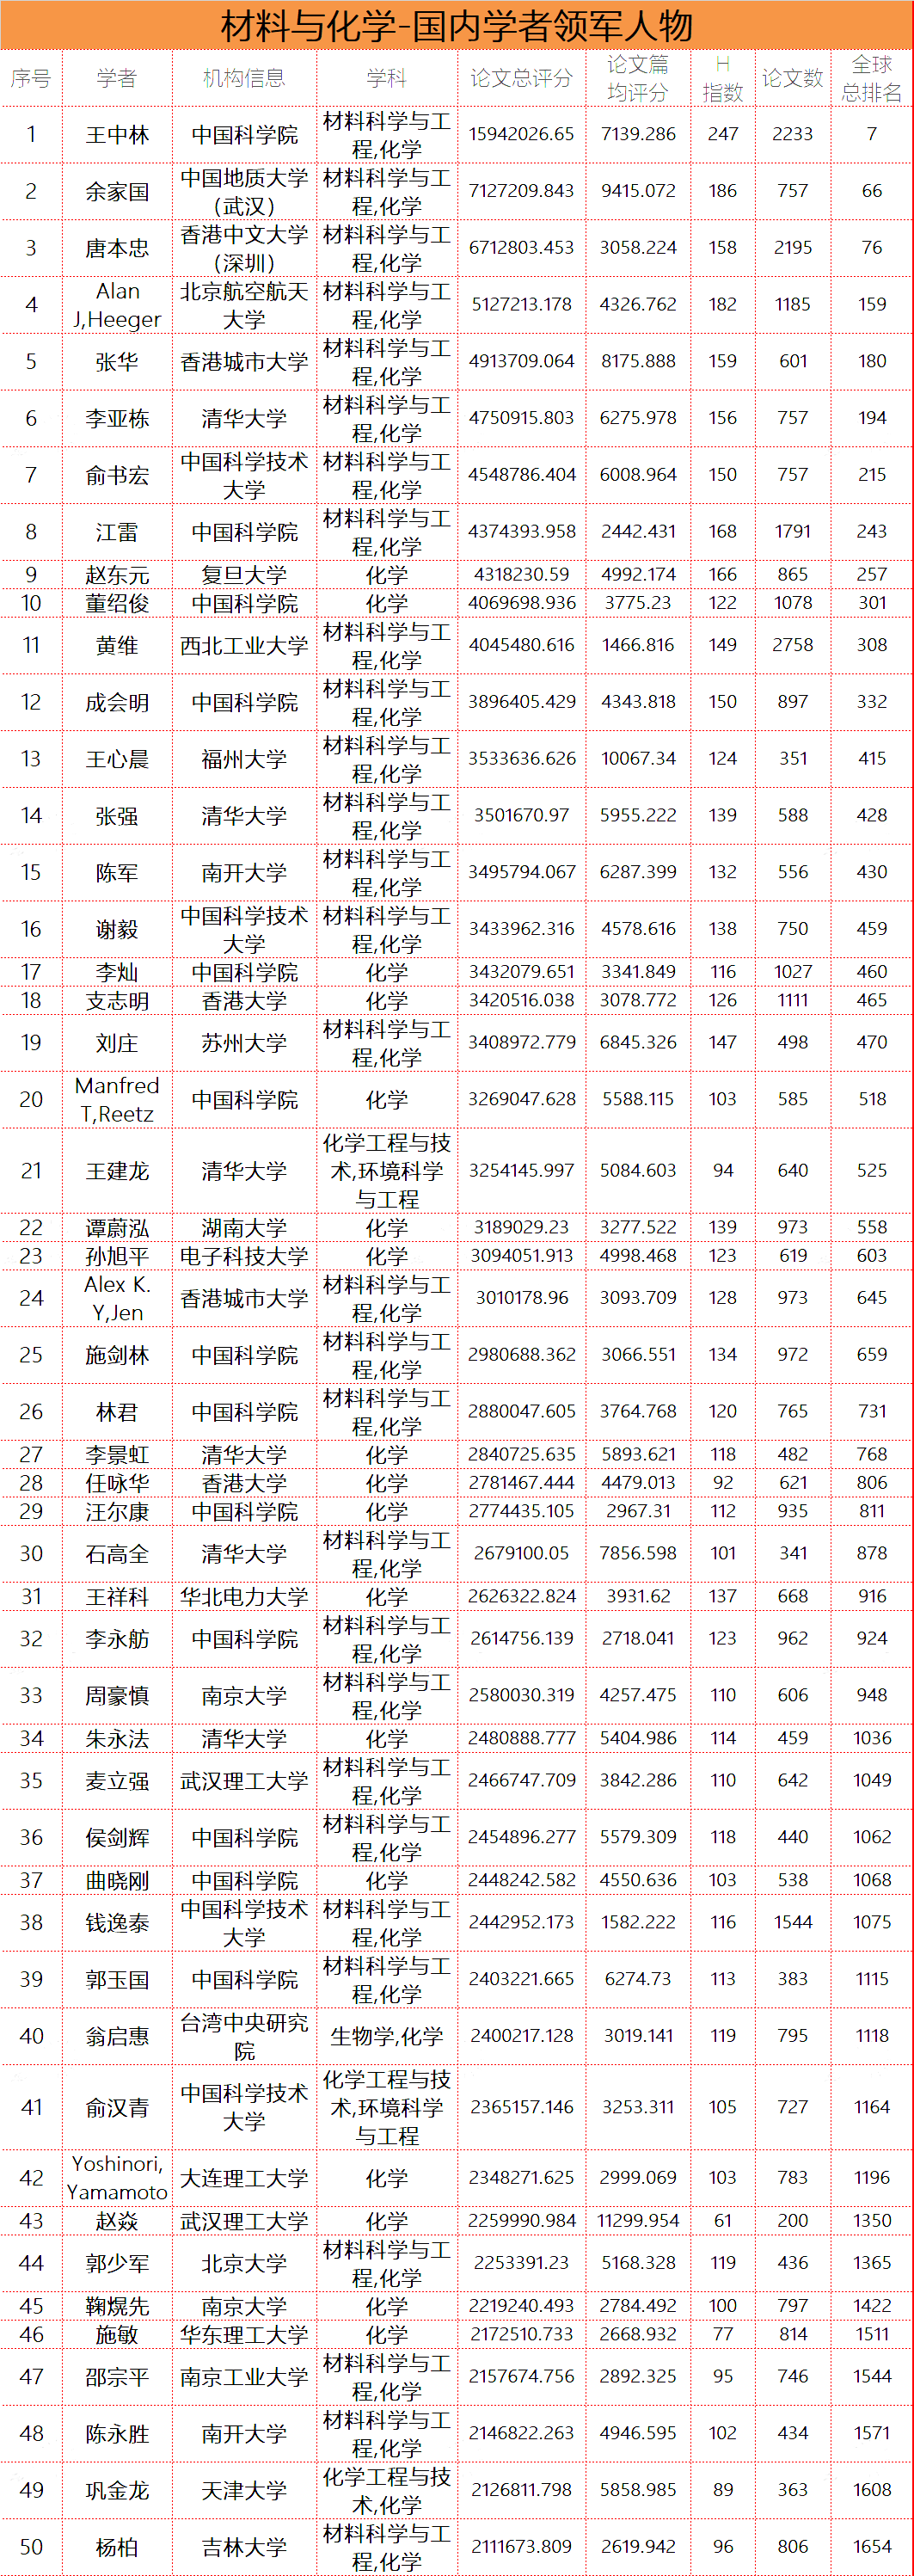 全球学者库：中国各大学科领军人物排行榜TOP100（含材料、化学领域）